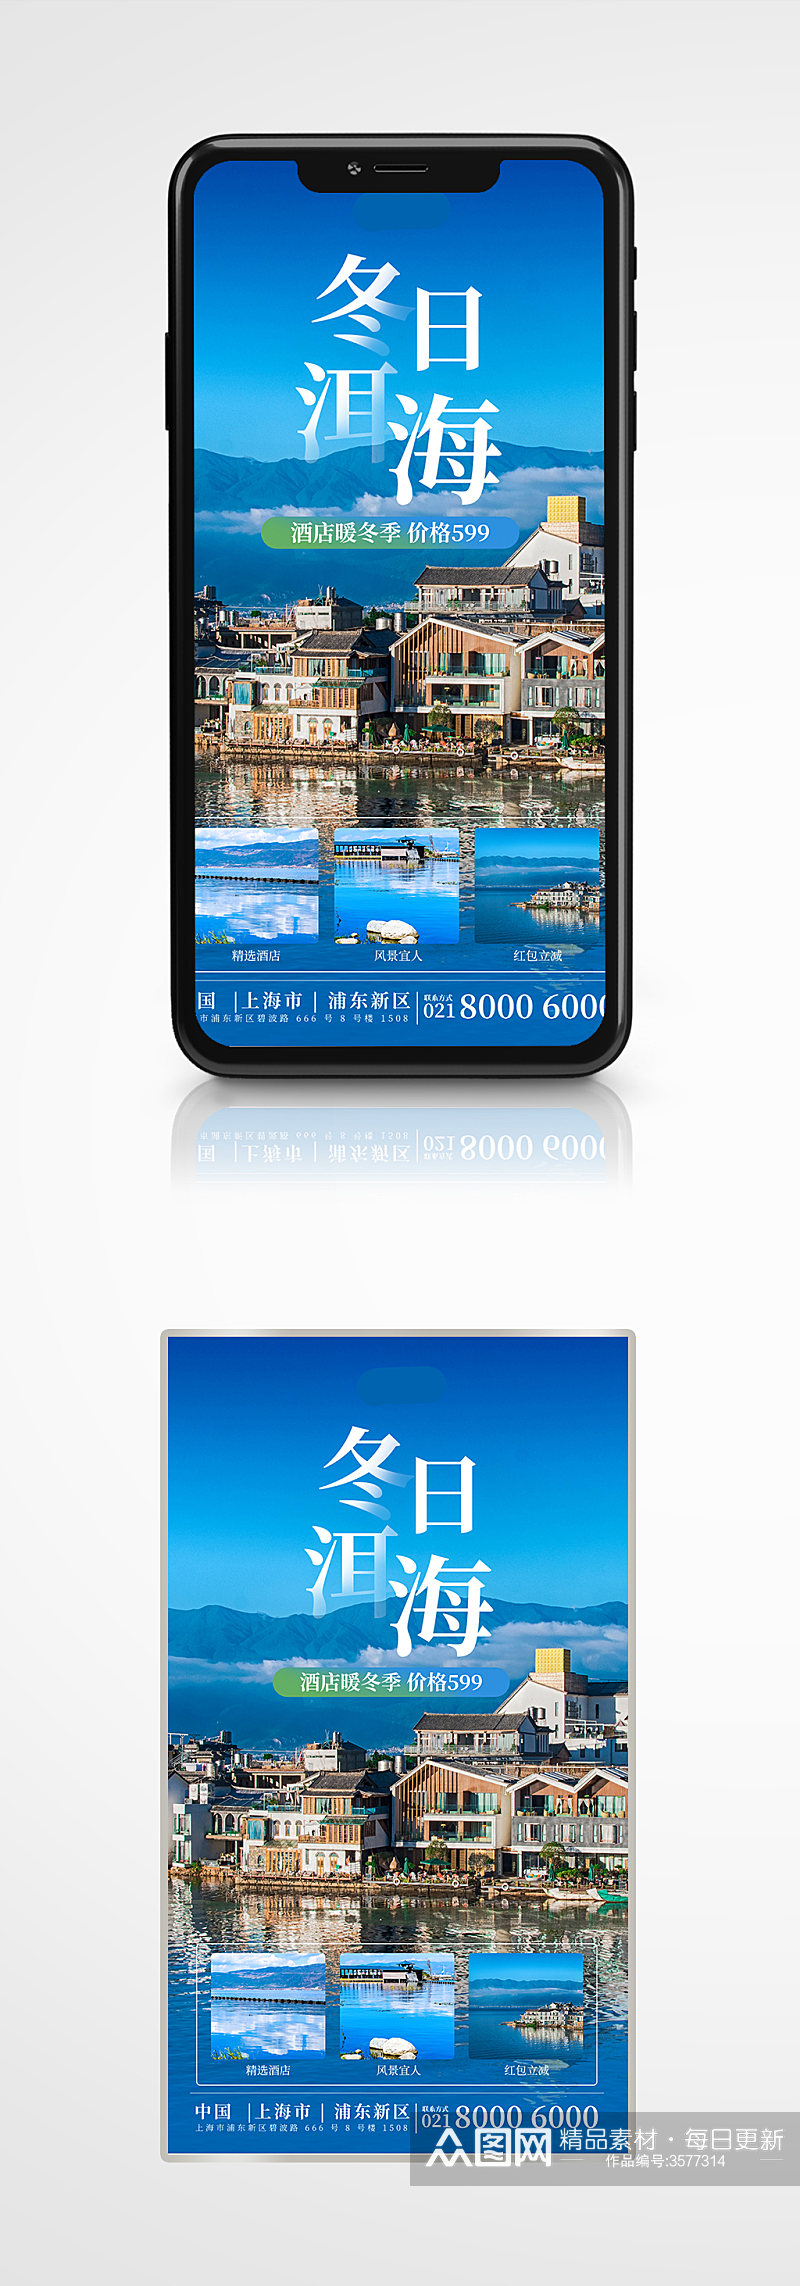 冬季旅游云南洱海出行手机海报蓝色度假素材